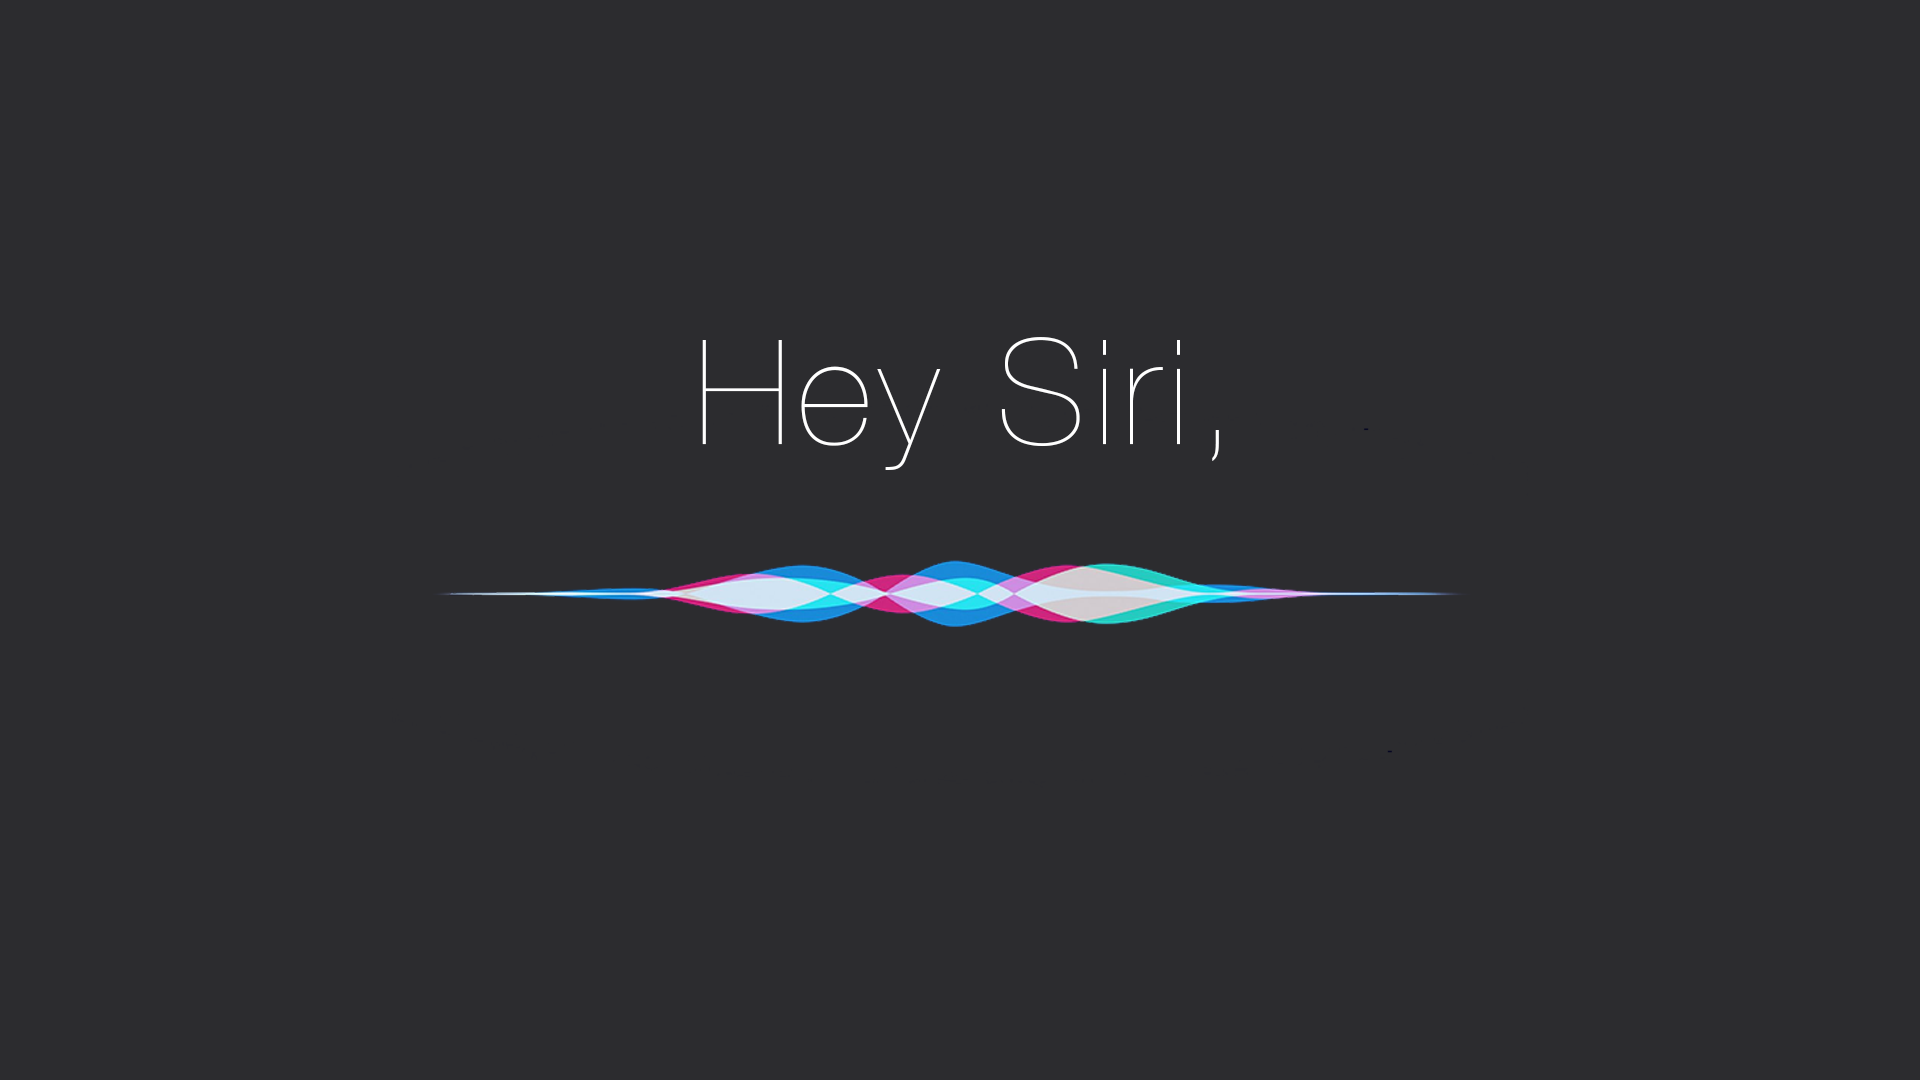 Apple kan komma att meddela på WWDC att man kommer att slopa den berömda frasen "Hello, Siri" - Bloomberg